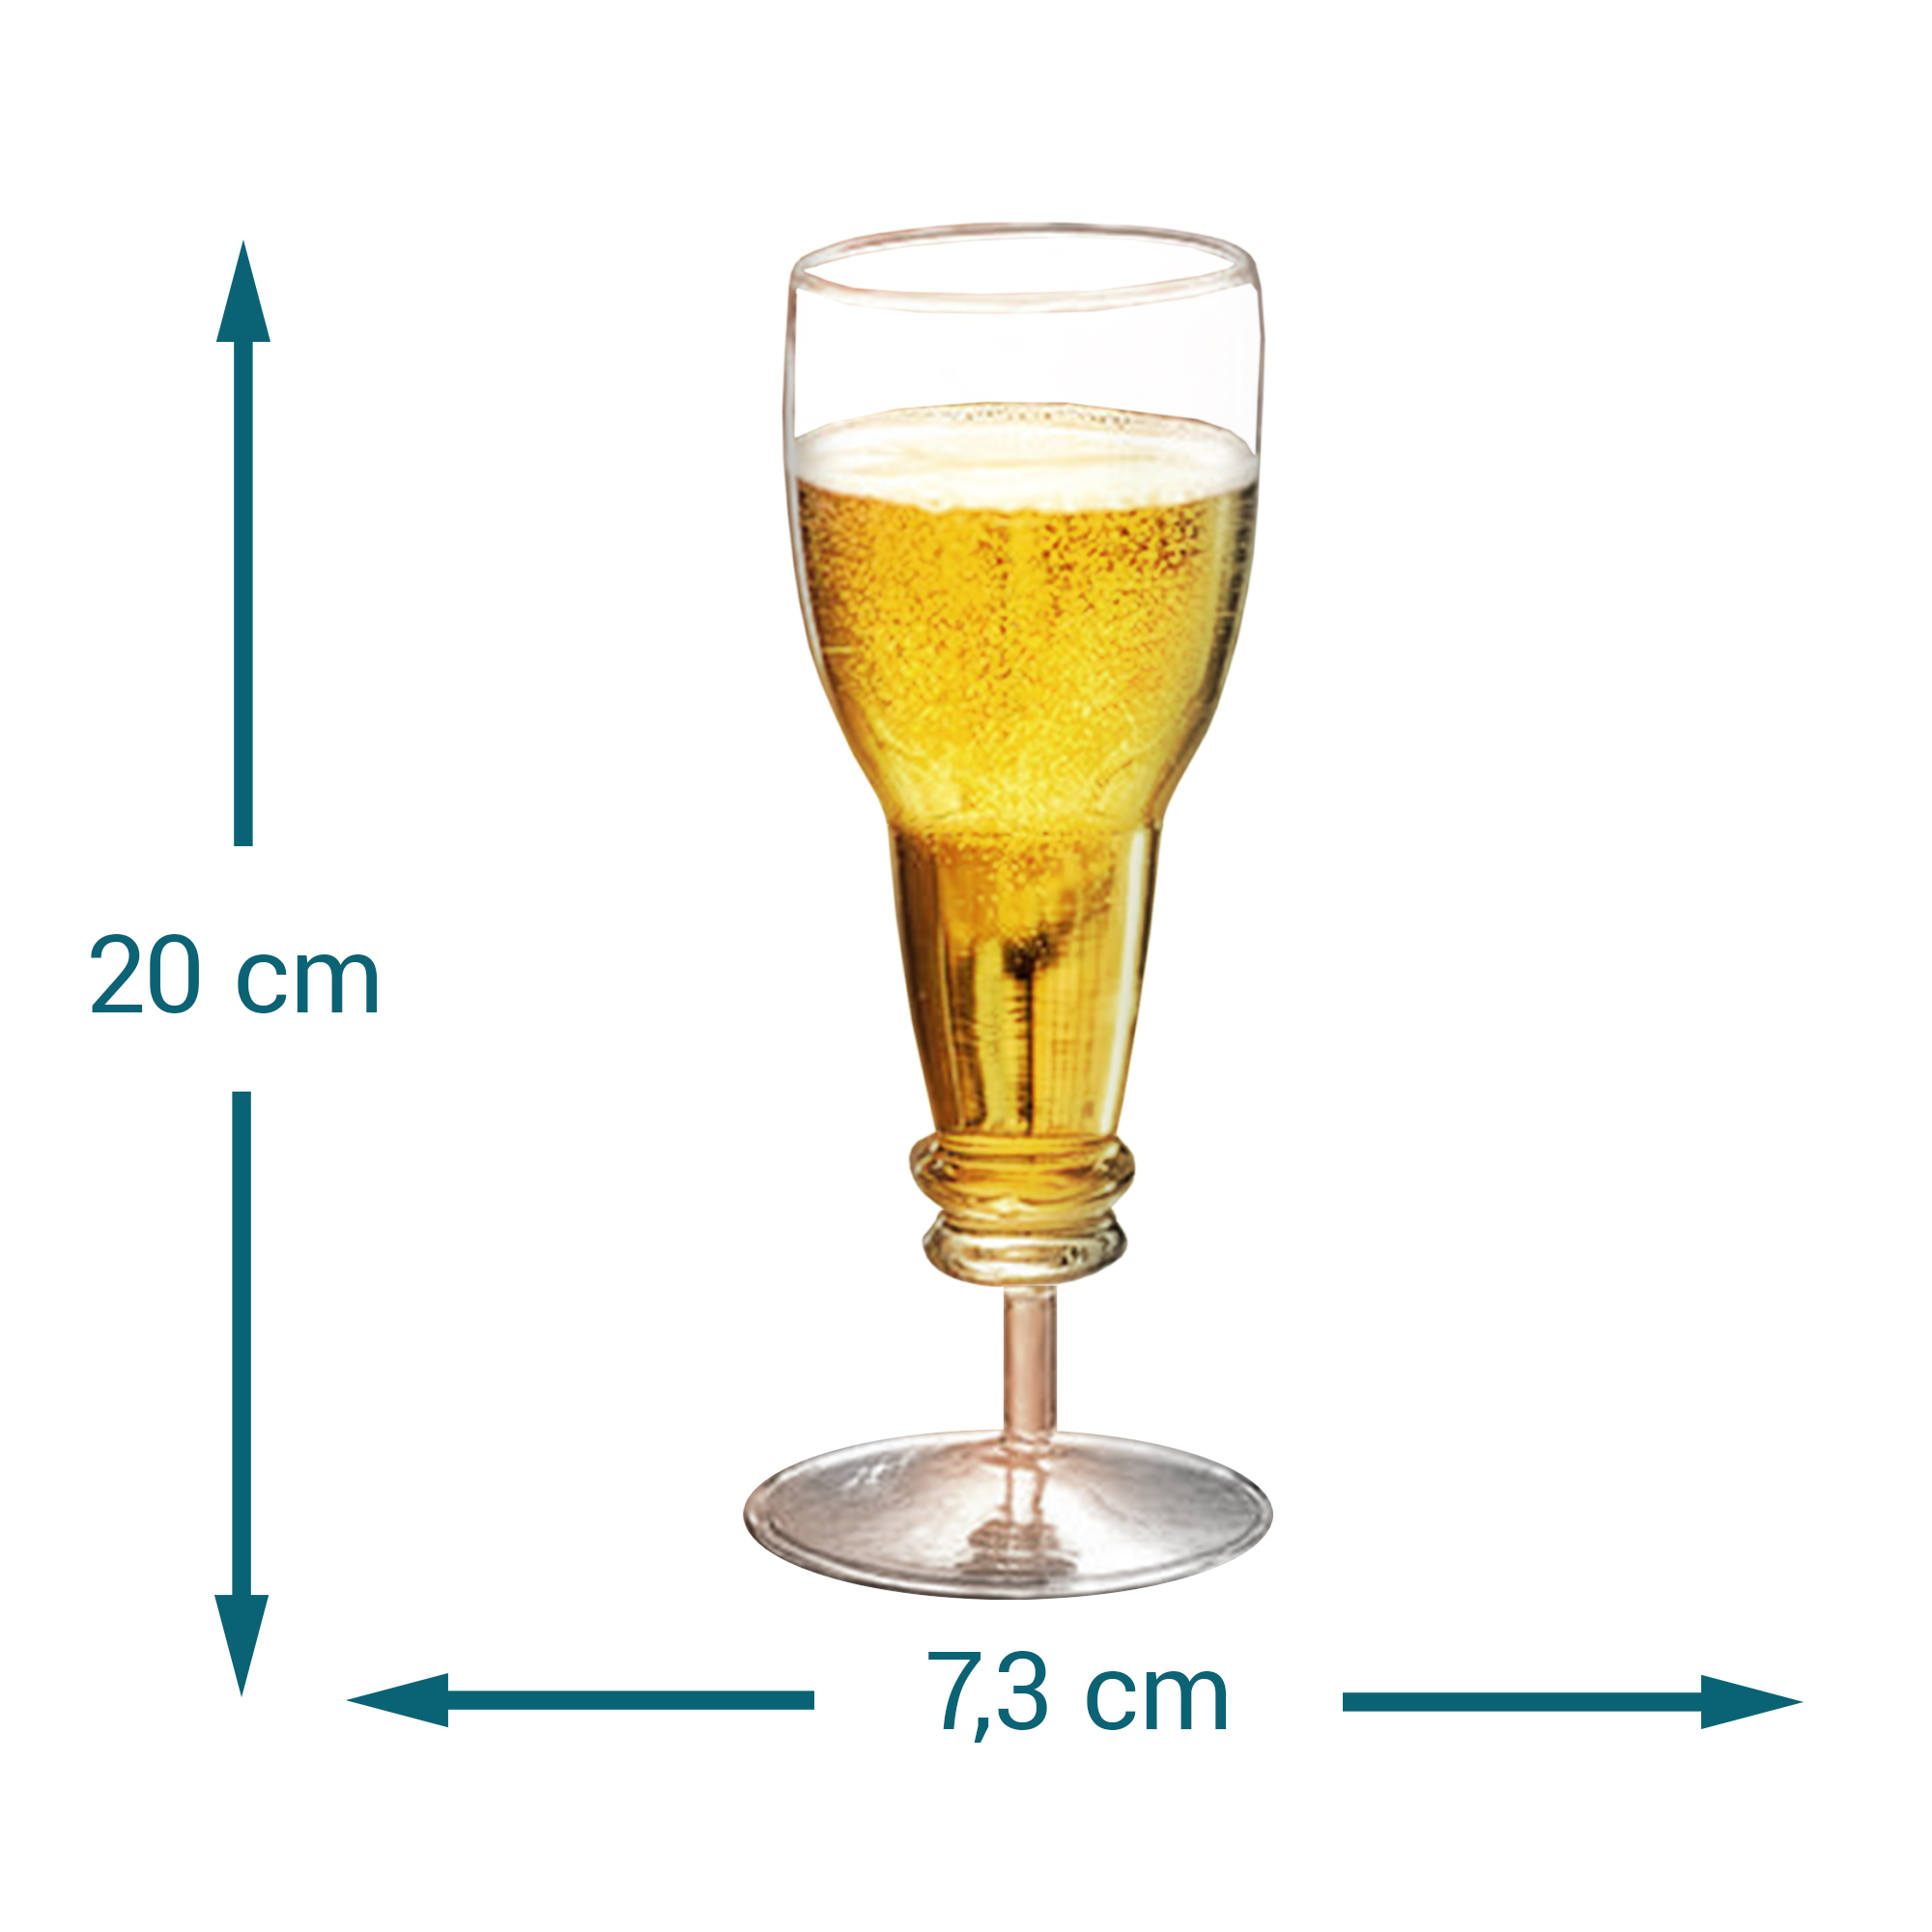 Sektglas in Bierflaschen Form 3879 - 2